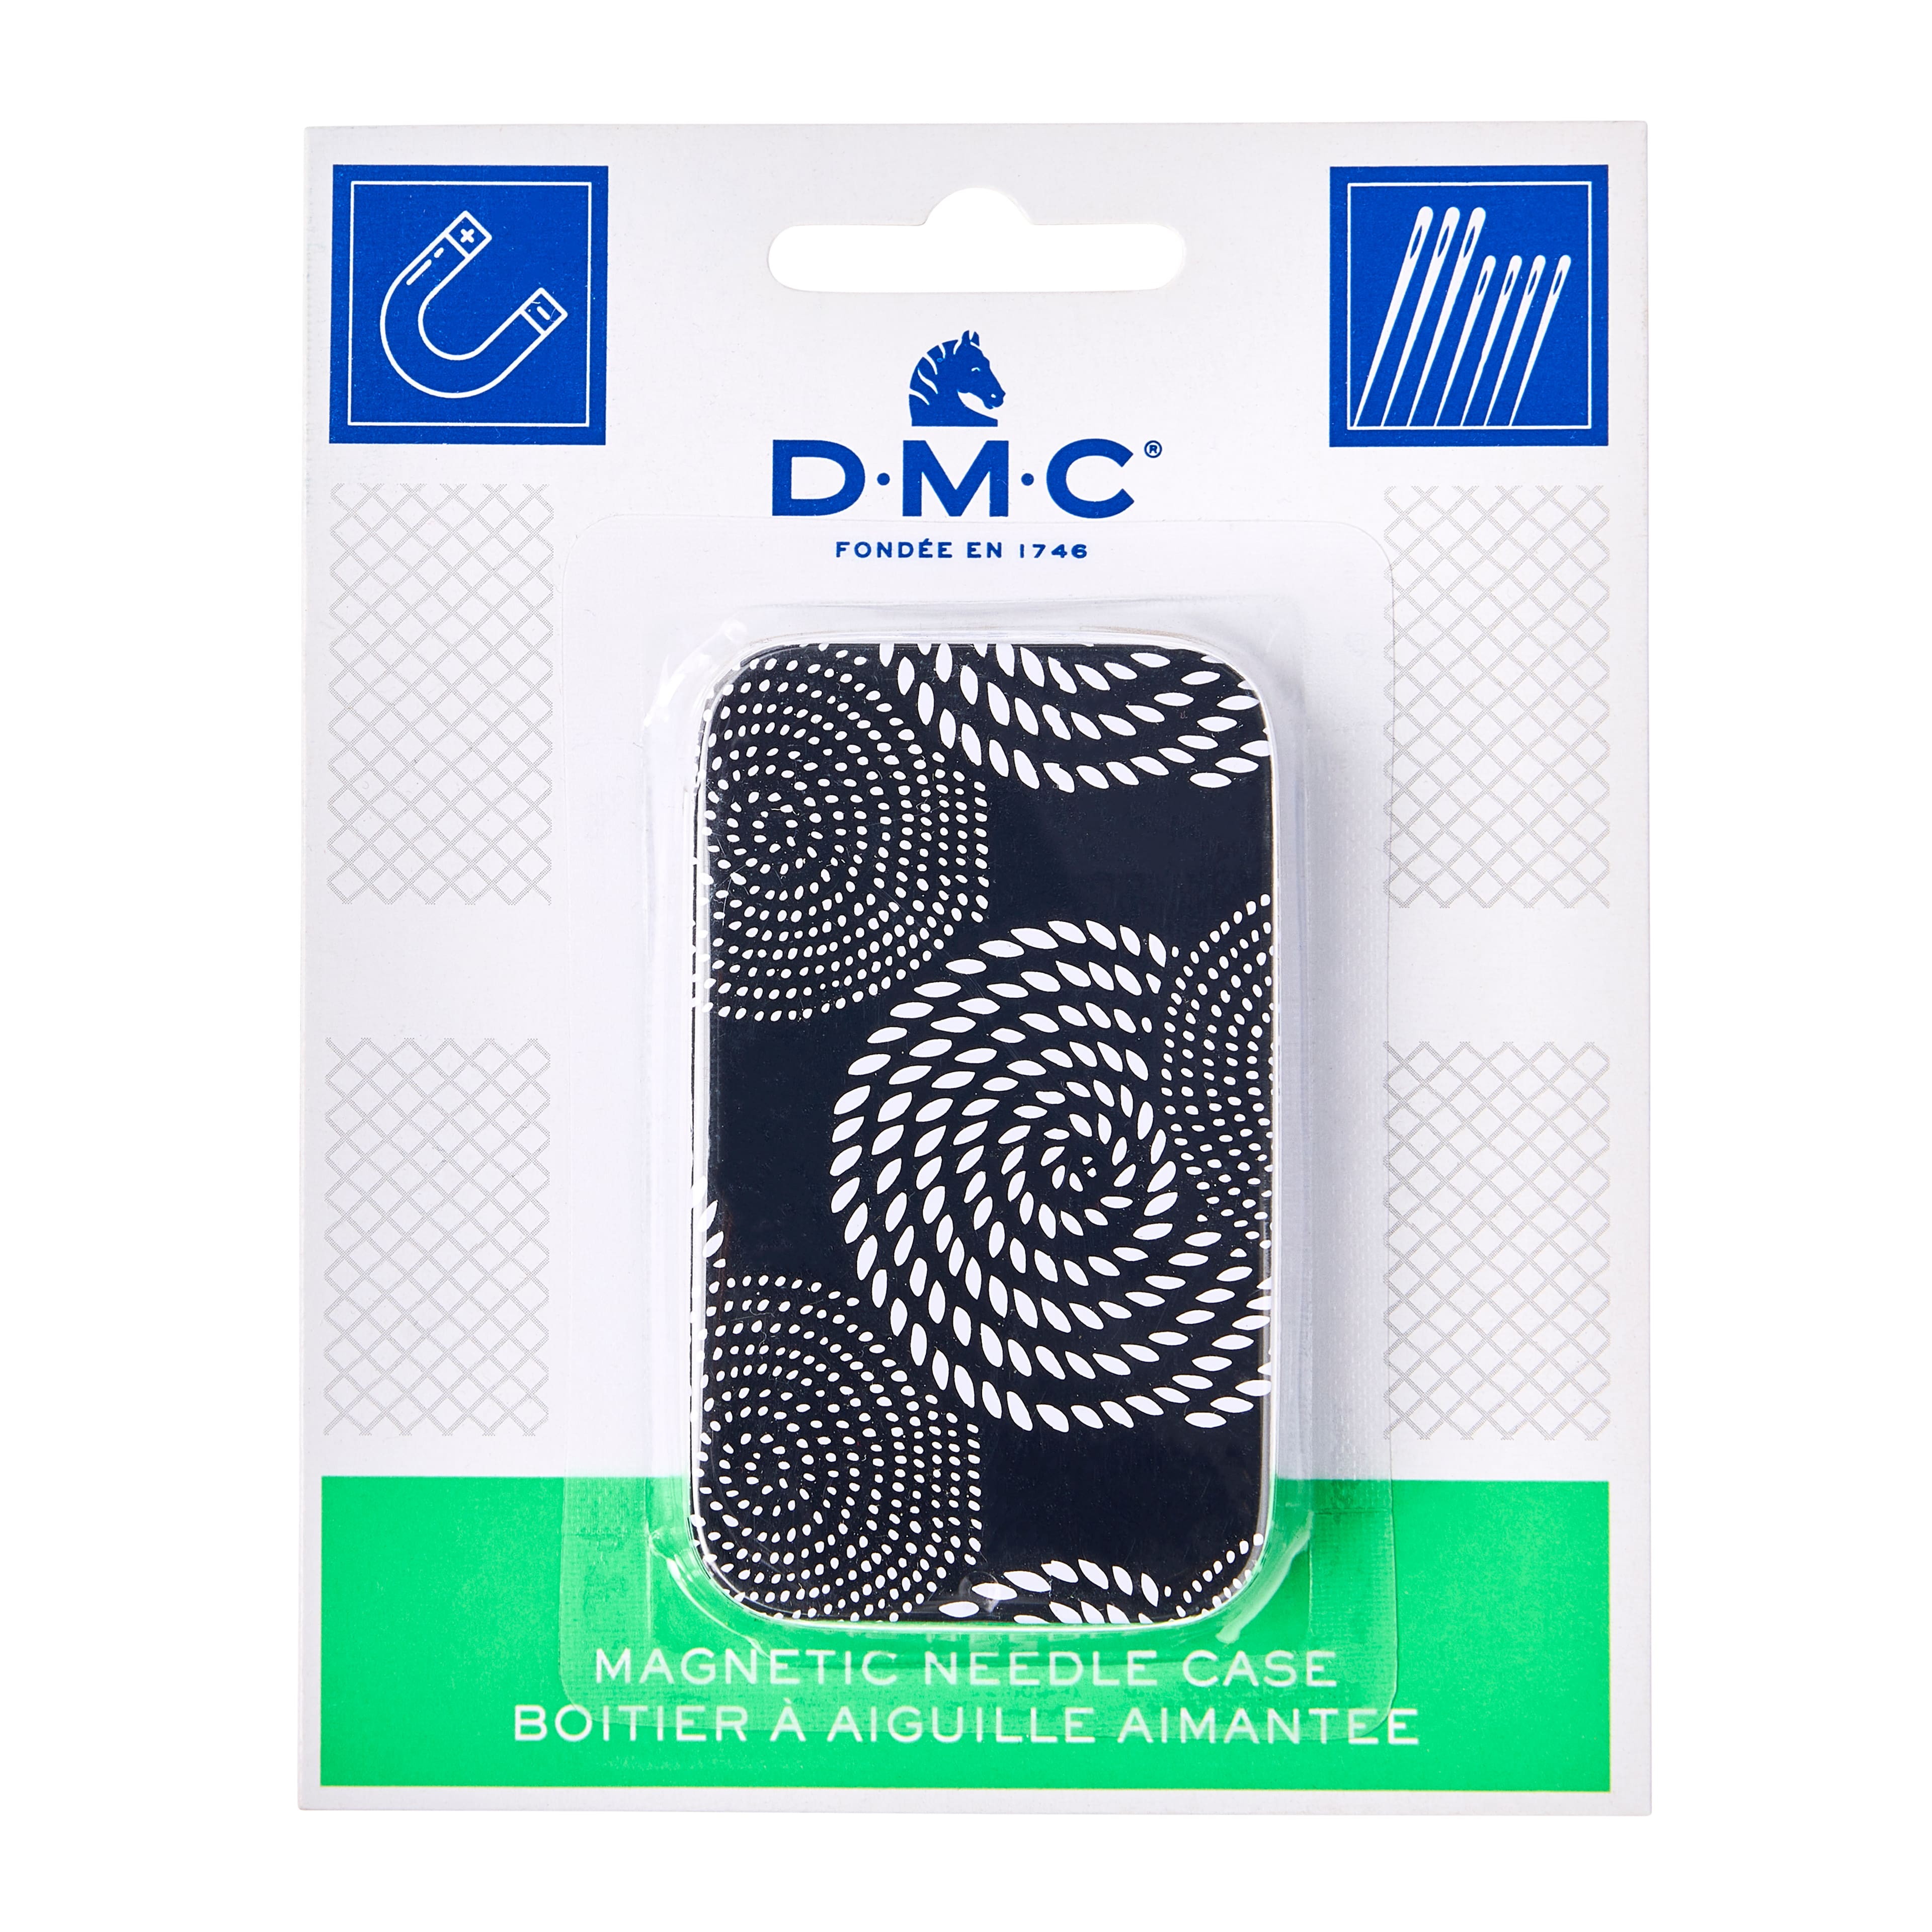 DMC&#xAE; Magnetic Needle Case